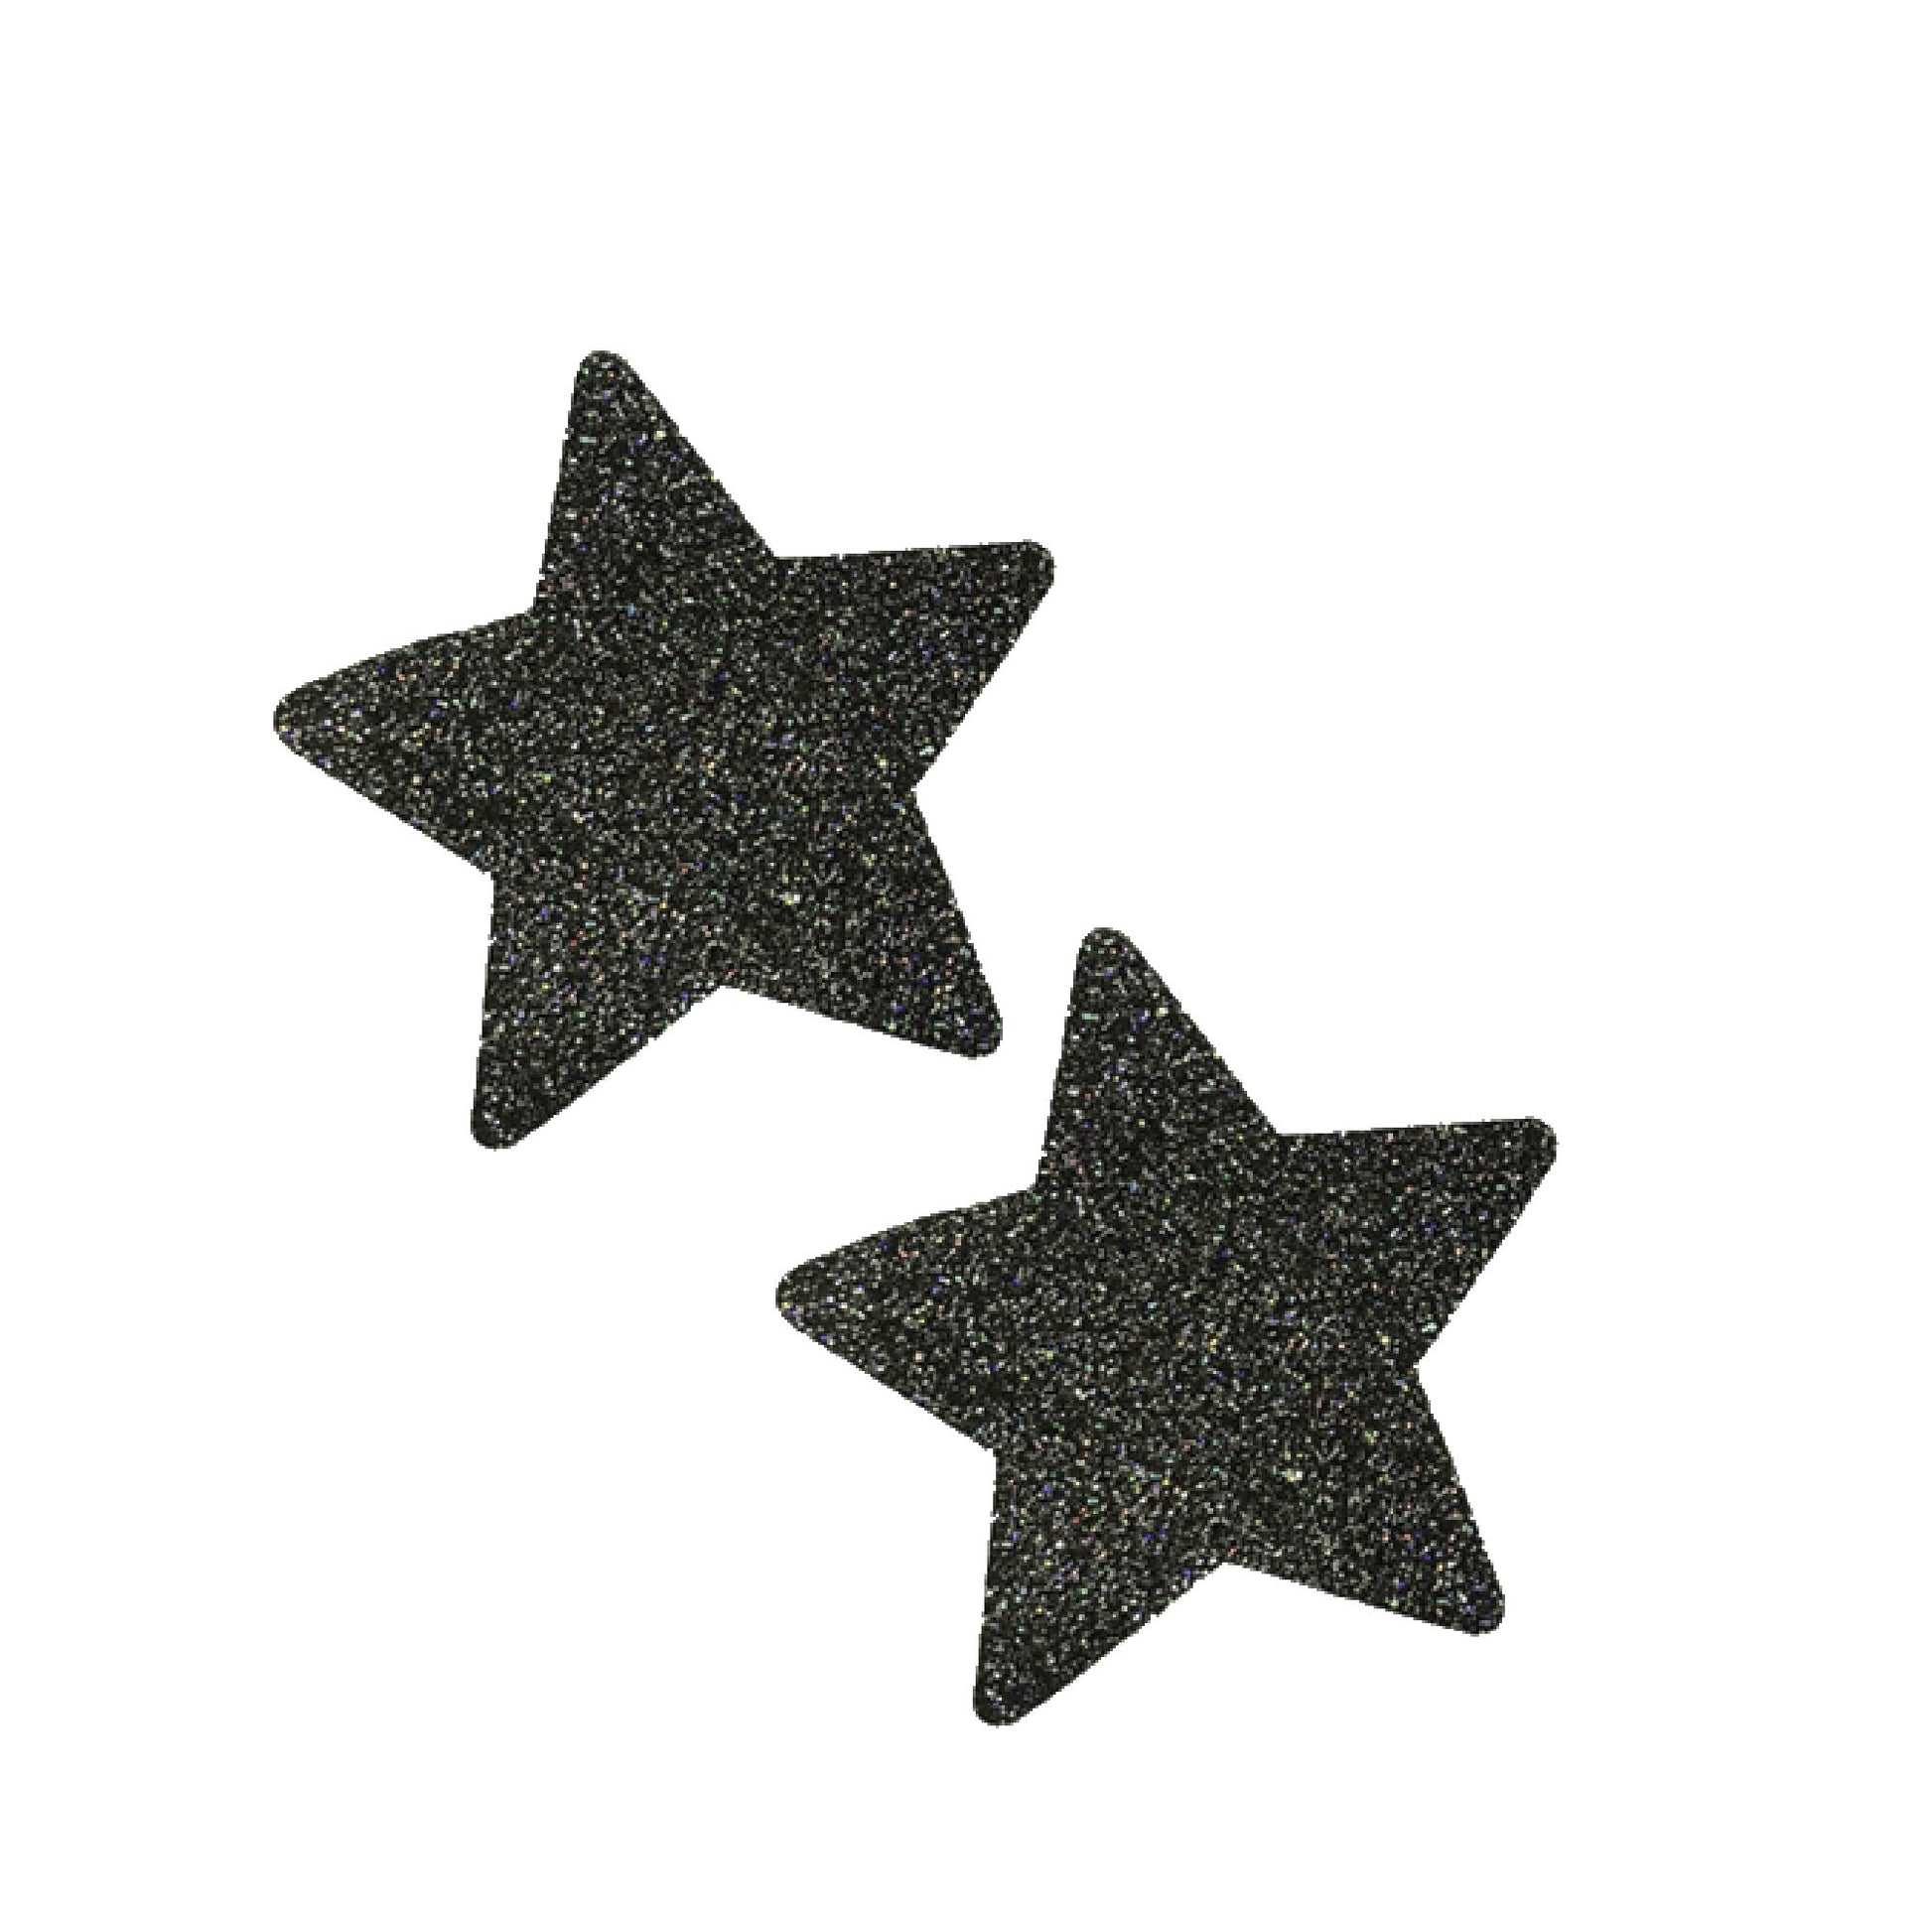  Black metallic glitter star nipple sticker 